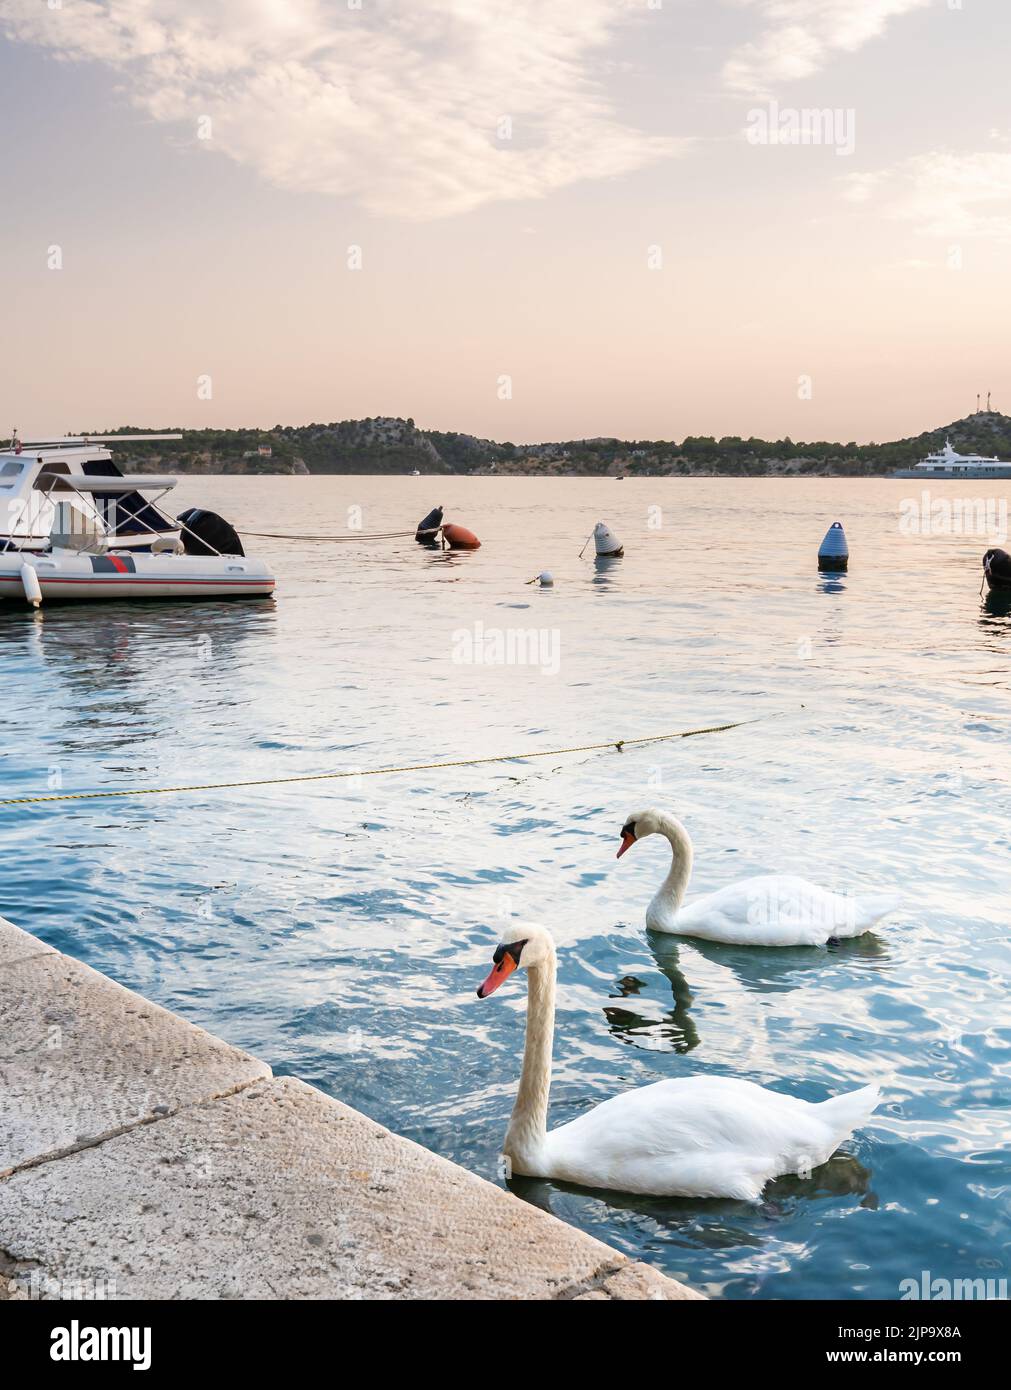 Der weiße Schwan schwimmt an der Adria im Hafen in der Nähe der Stadt Sibenik, Kroatien. Schöner TierVogel, magischer Sonnenuntergang. Stockfoto